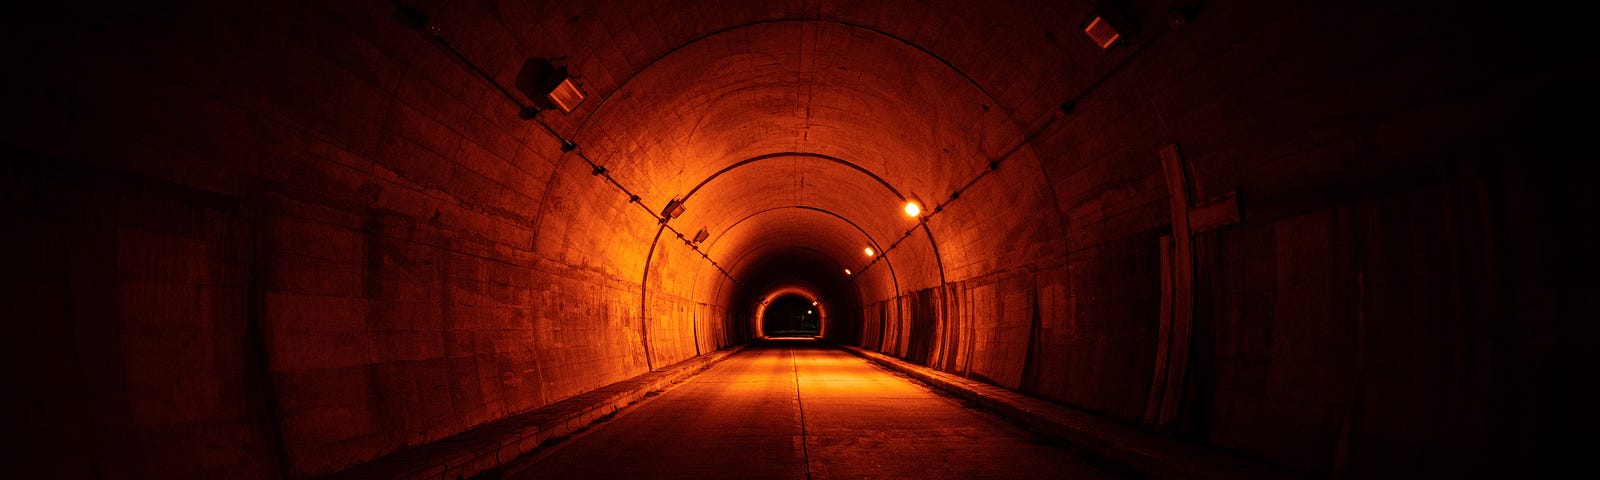 A concrete tunnel, dimly lit